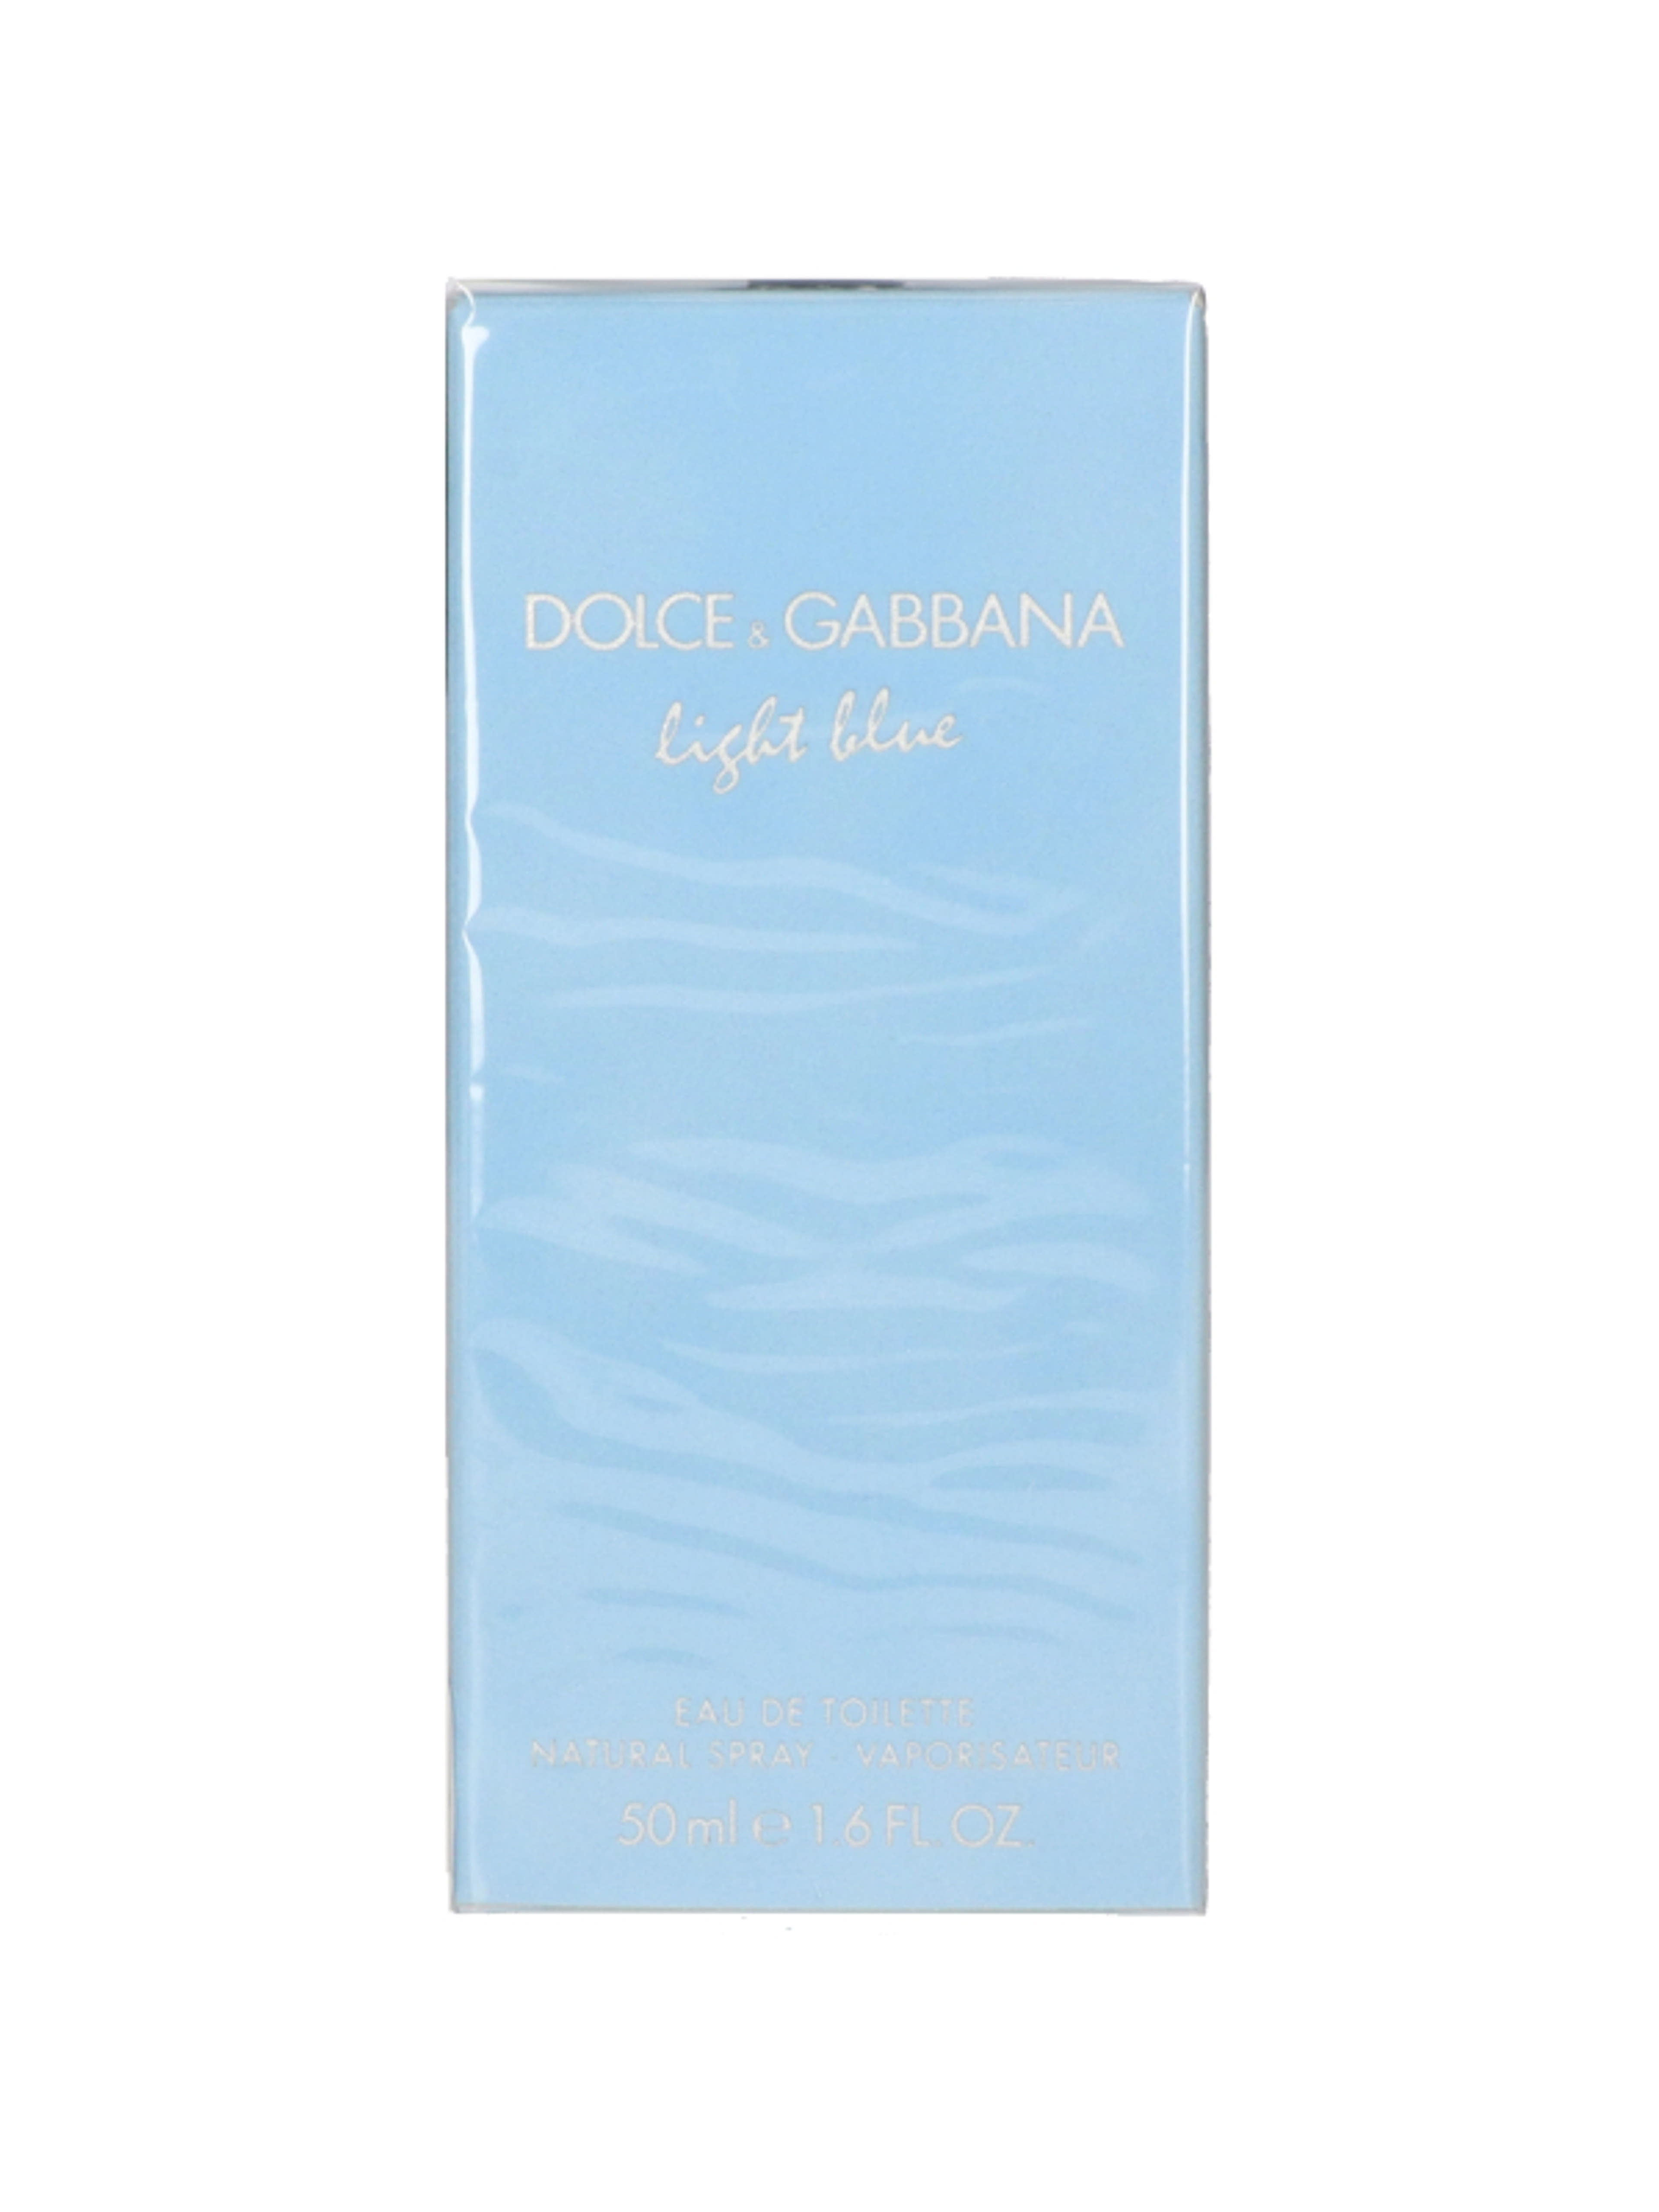 Dolce & Gabbana Light Blue noi Eau de Toilette - 50 ml-1